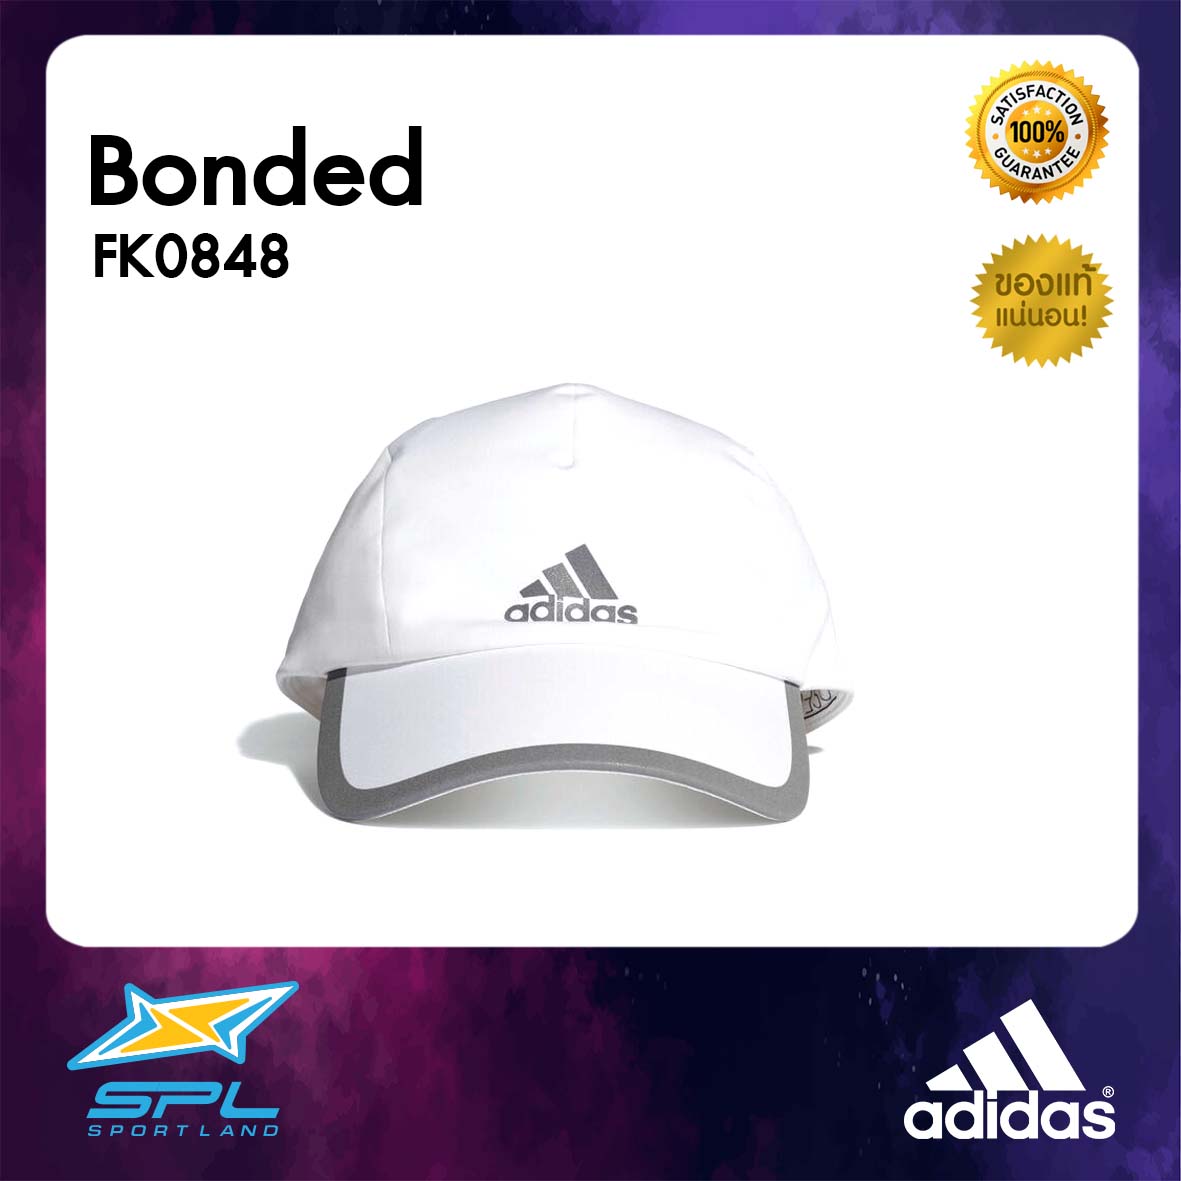 Adidas หมวก แฟชั่น อาดิดาส หมวกวิ่ง หมวกกีฬา หมวกแก็ป ผู้หญิงและผู้ชาย อาดิดาส Runing Women and Man Cap Bonded FK0848 (800)